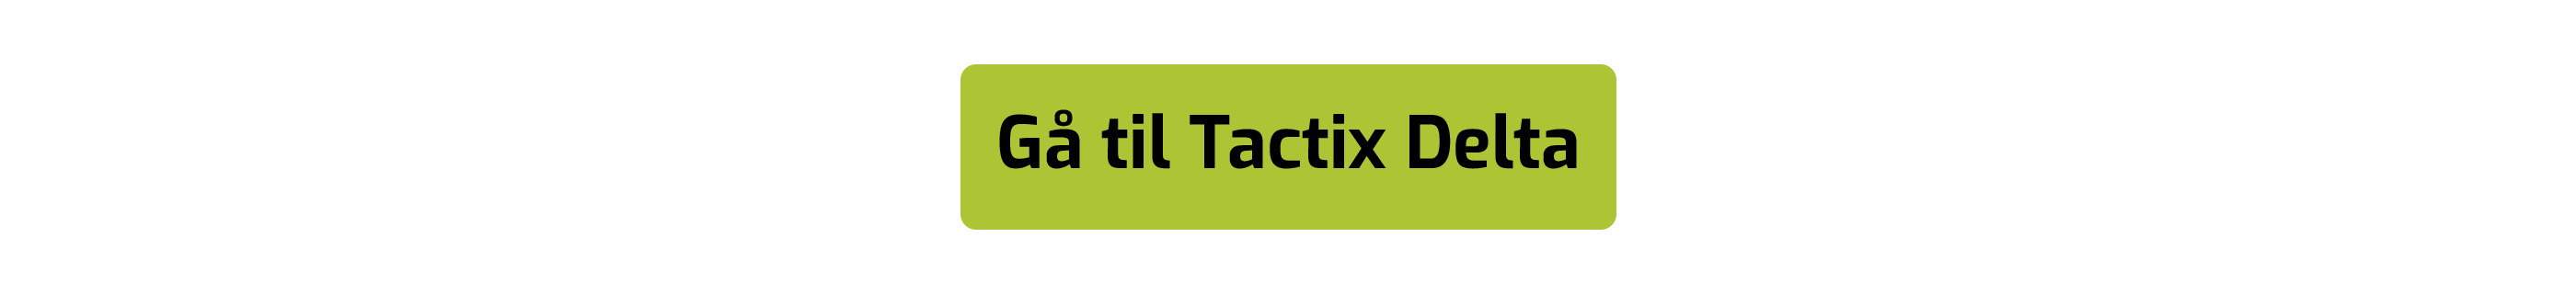 Køb tactix delta knap